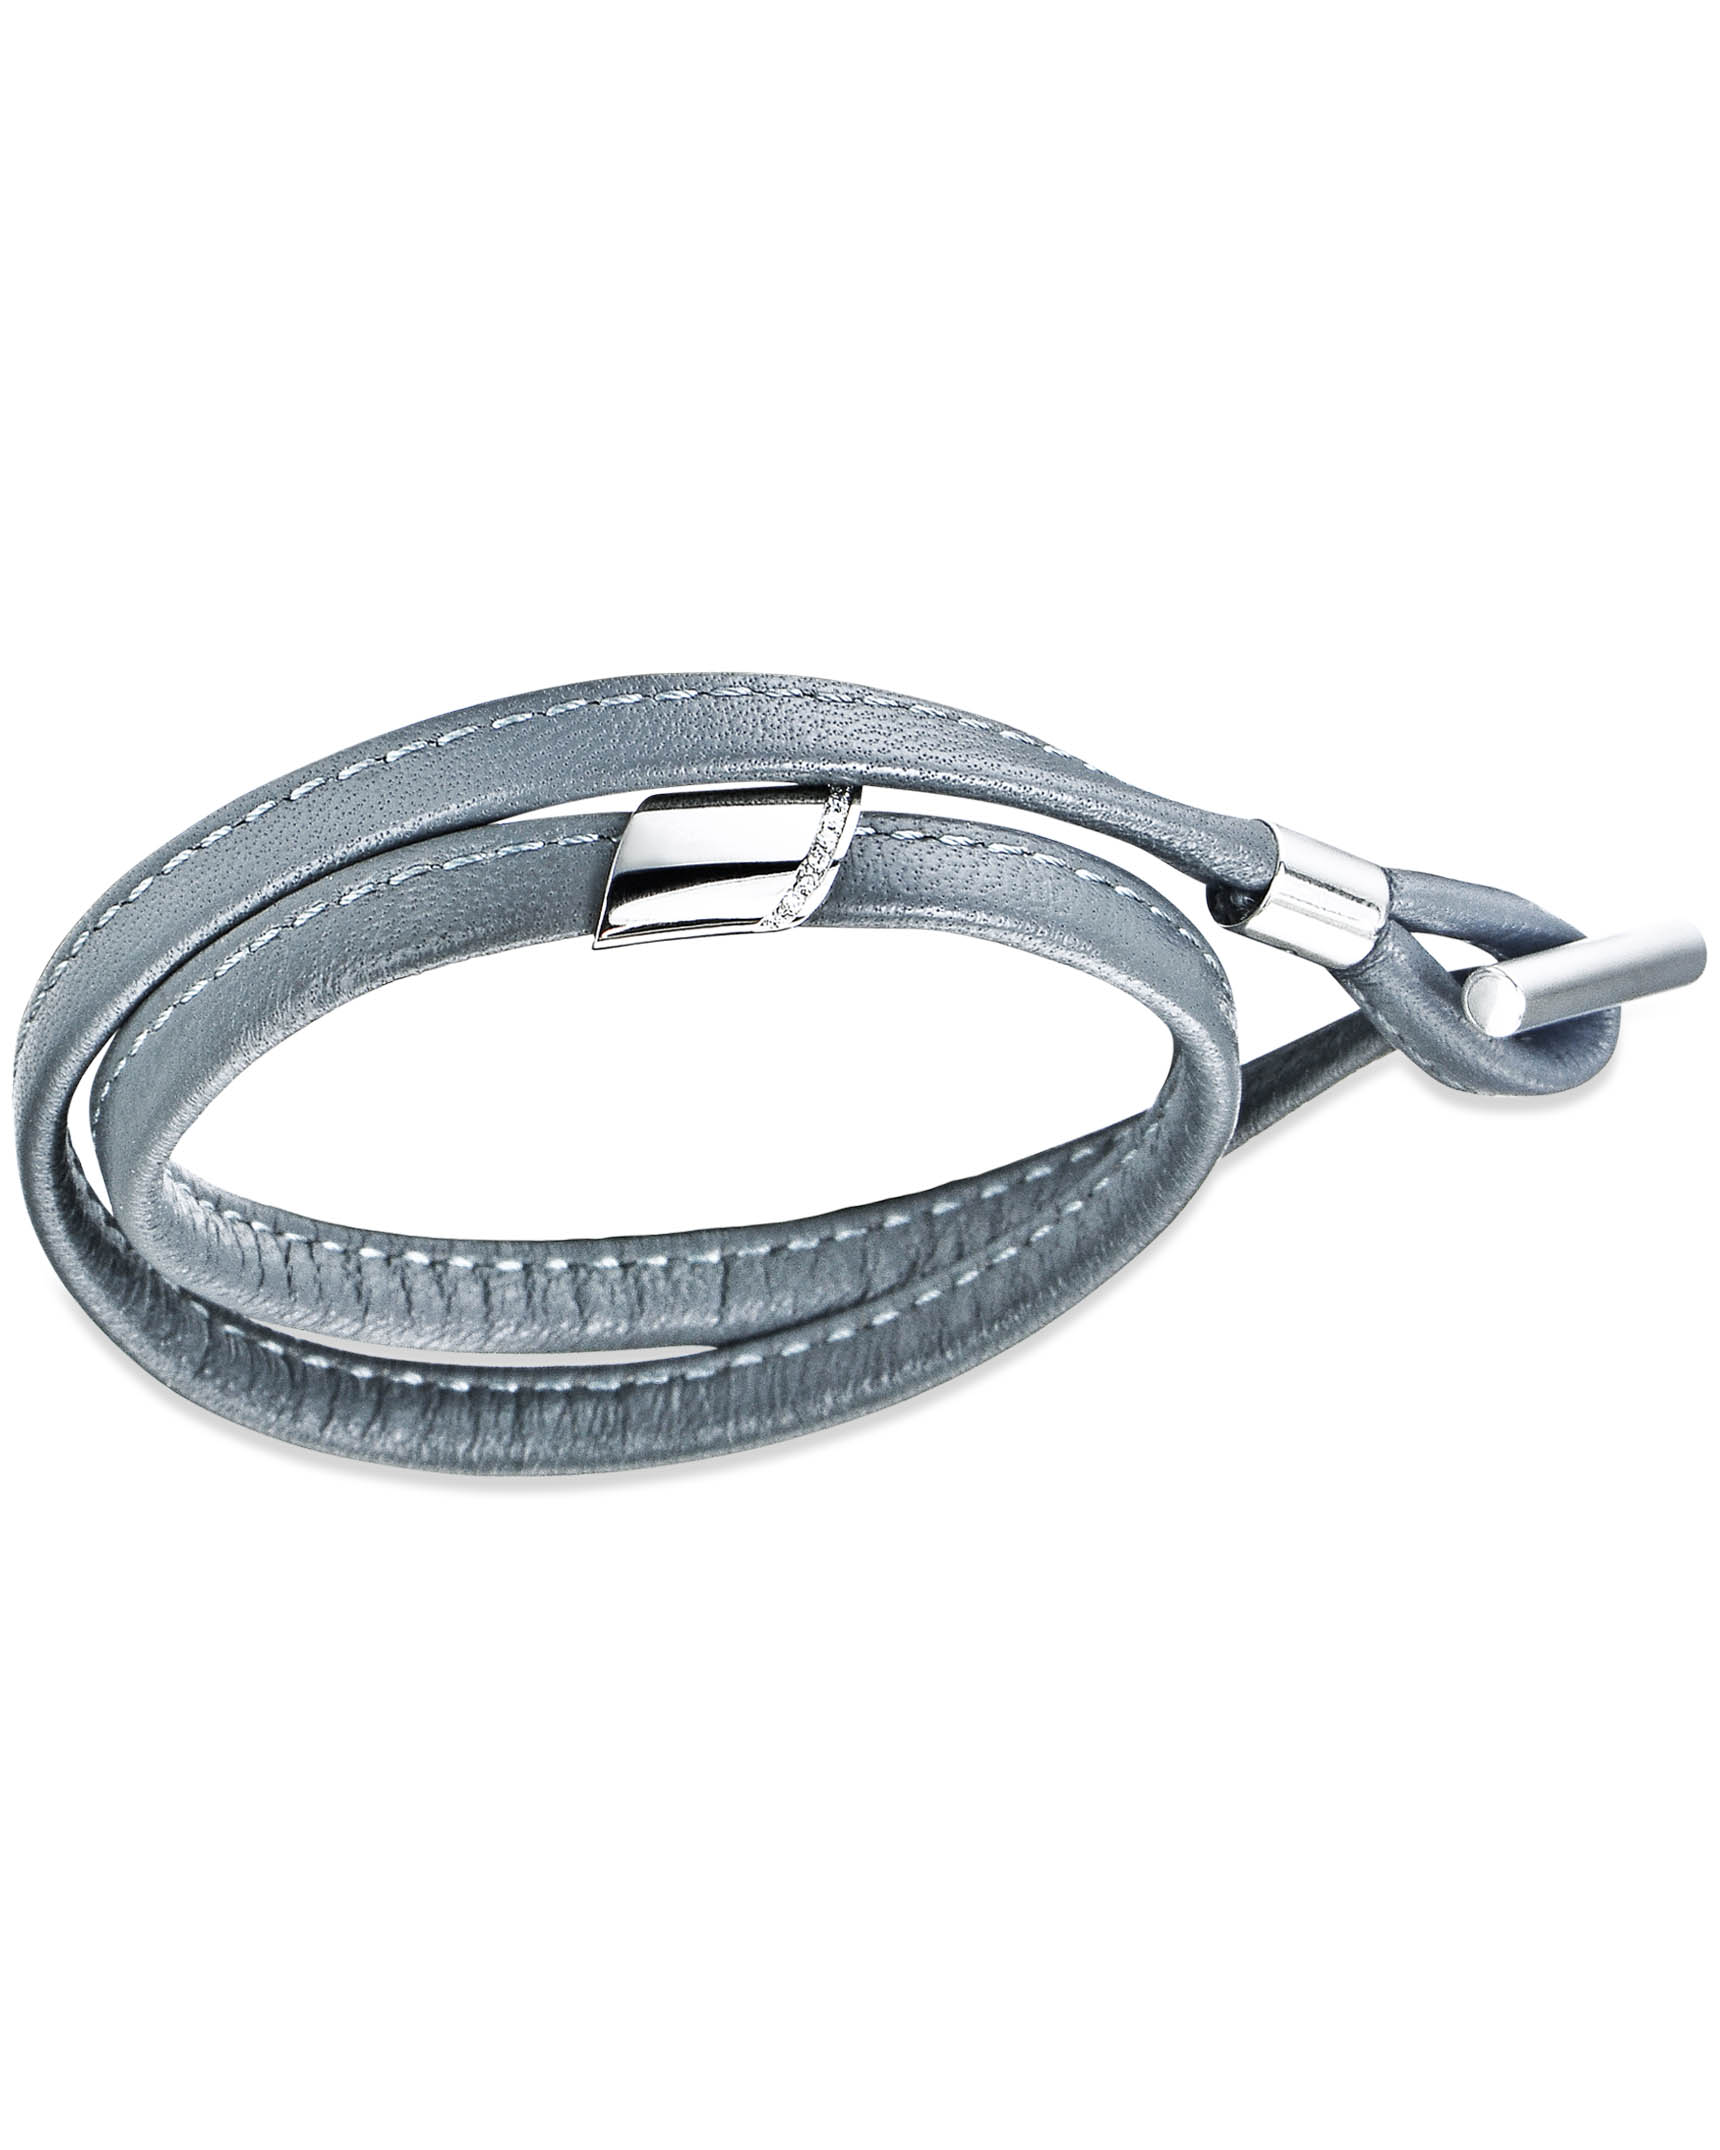 Grey Napa Leather Diamond Bracelet by Henrich & Denzel - Turgeon Raine